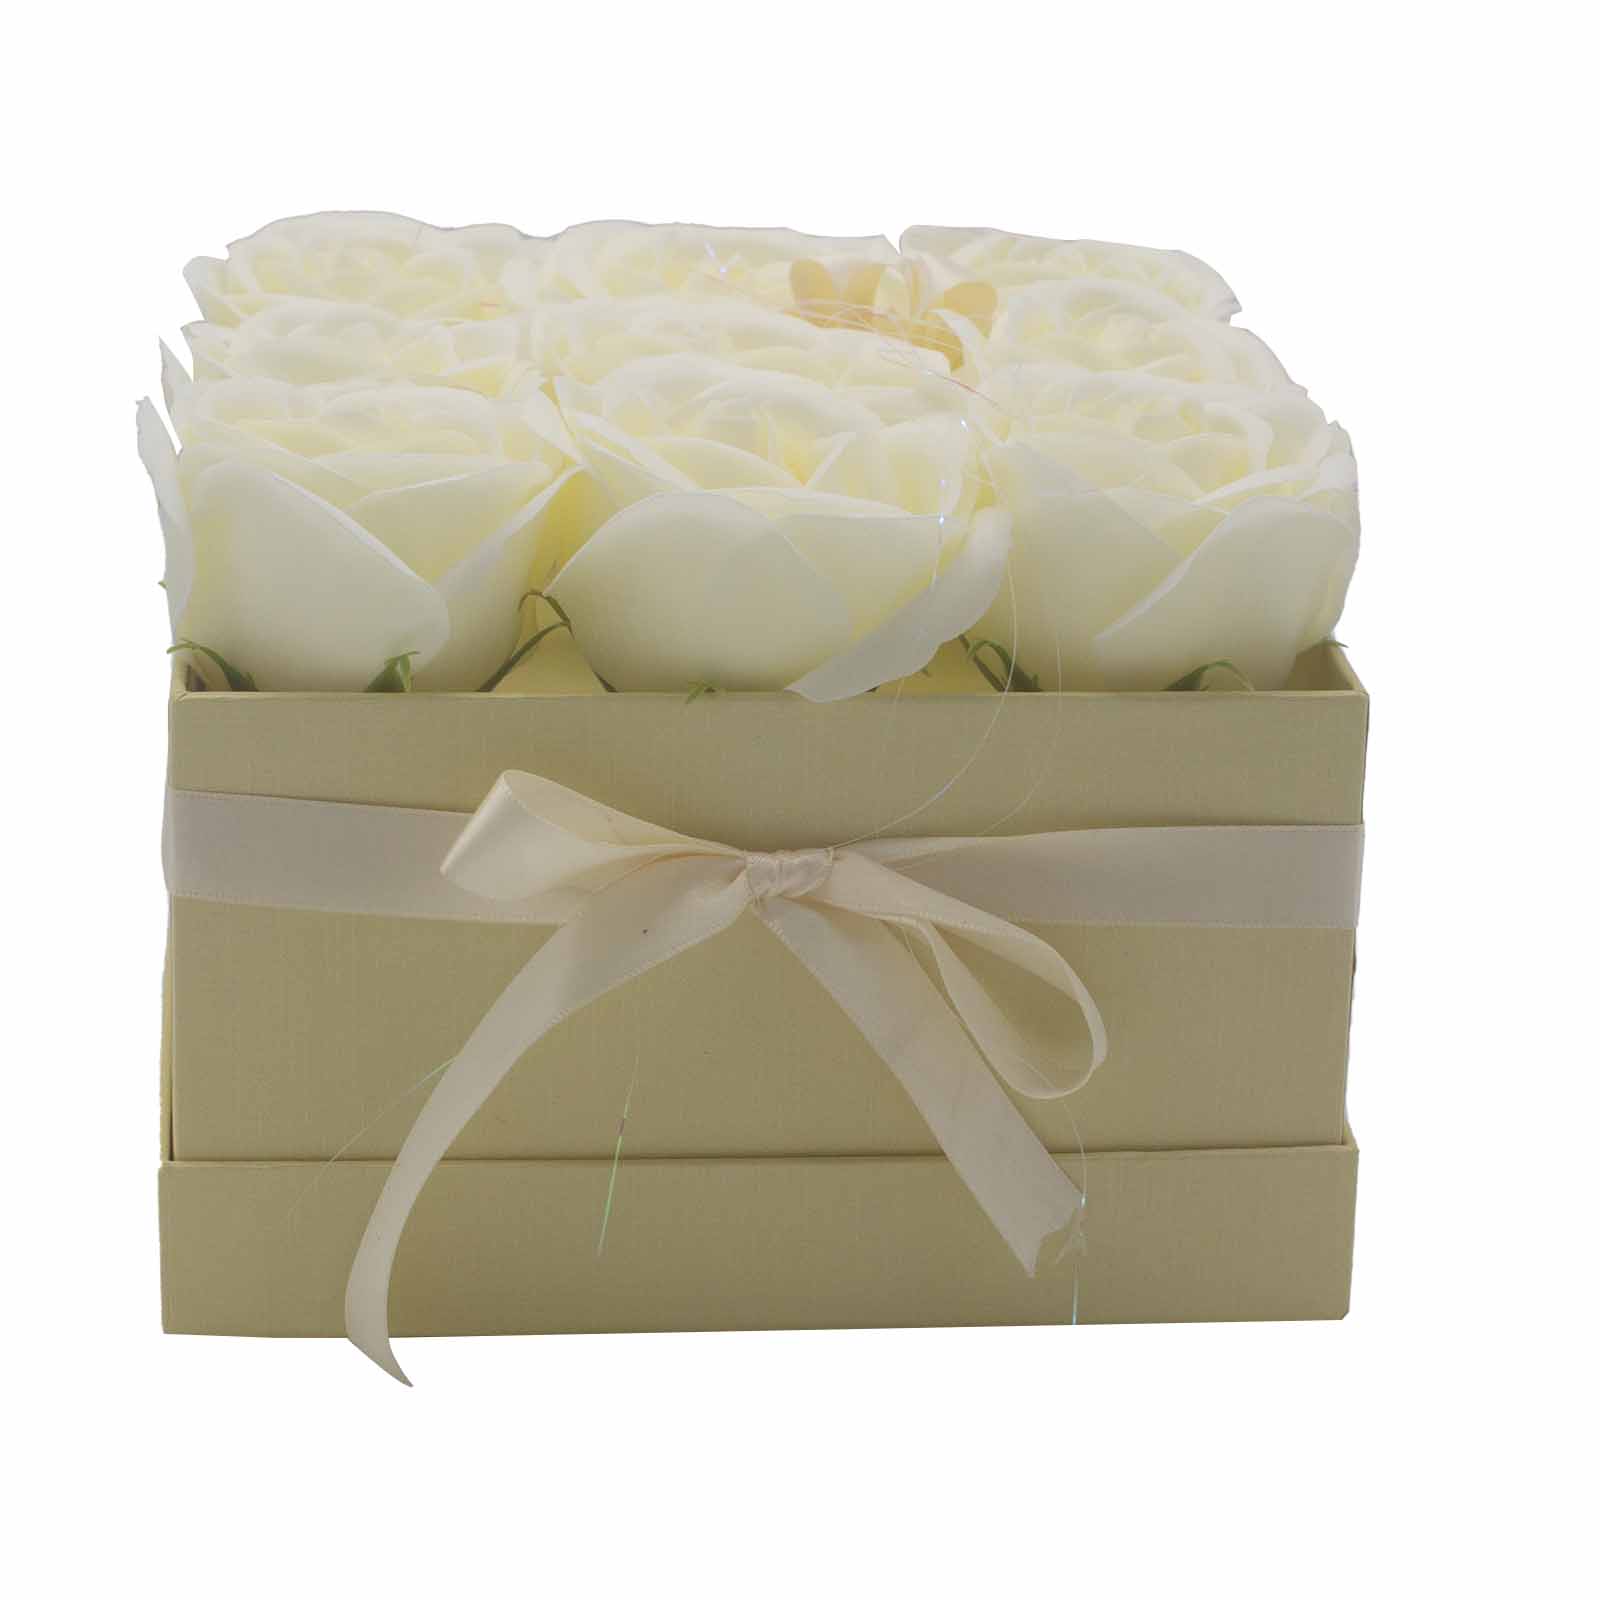 Dárkový box z mýdlových květů - 9 krémových růží - Čtverec